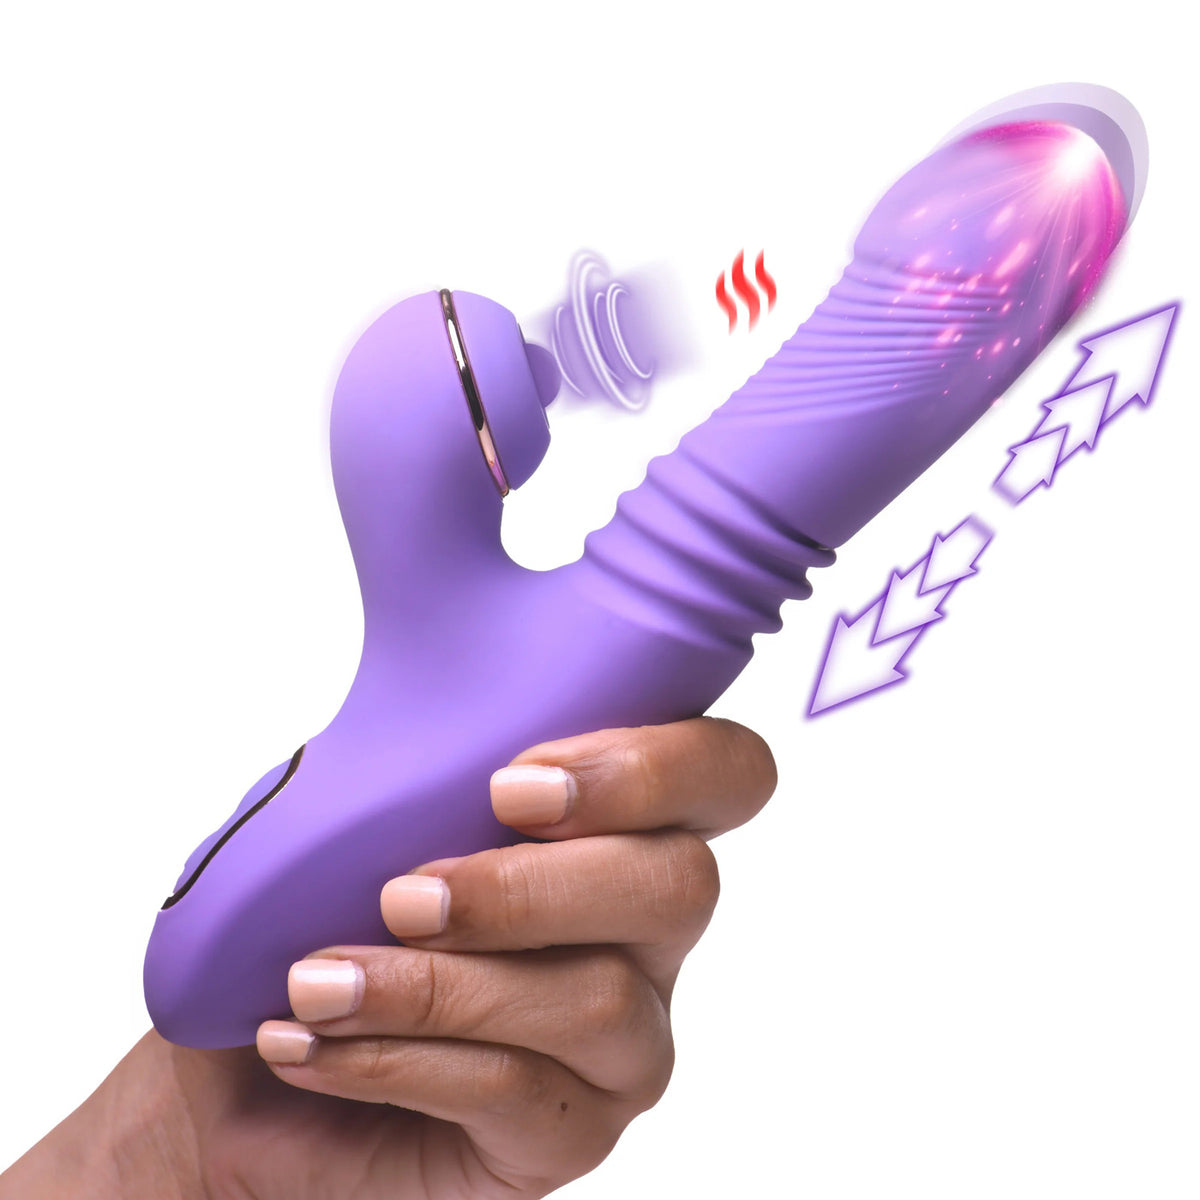 Conejo de silicona de empuje y pulsación Pro-Thrust Max 14x - Púrpura